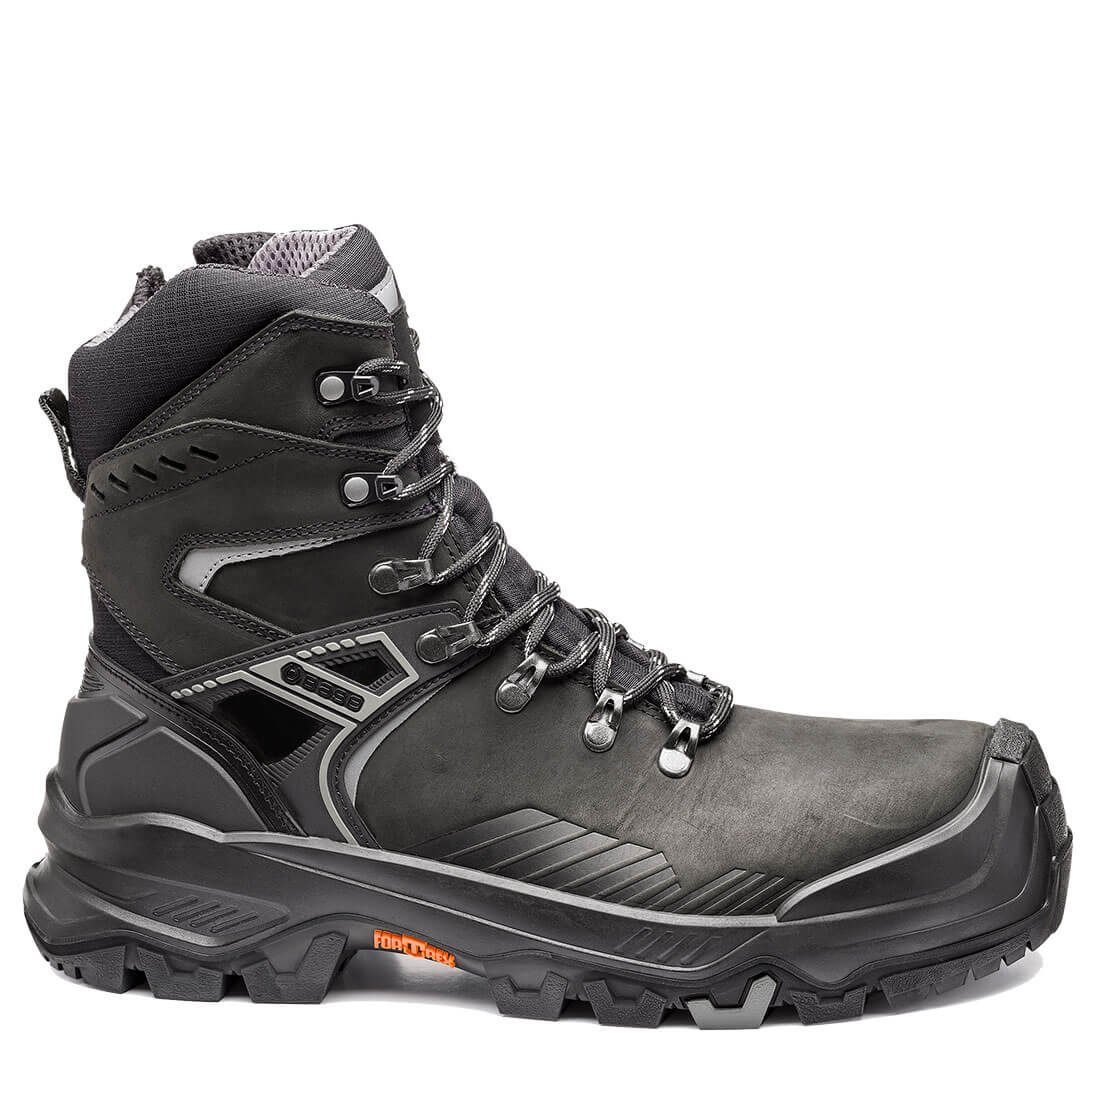 Base Footwear Sicherheitsschuhe B1611 - Rutchhemmend, Durchtrittsicher, T-MASSIVE Wasserabweisend, Kälteisoliert Sicherheitsschuh Wärmeisolierend, Allroundshoes